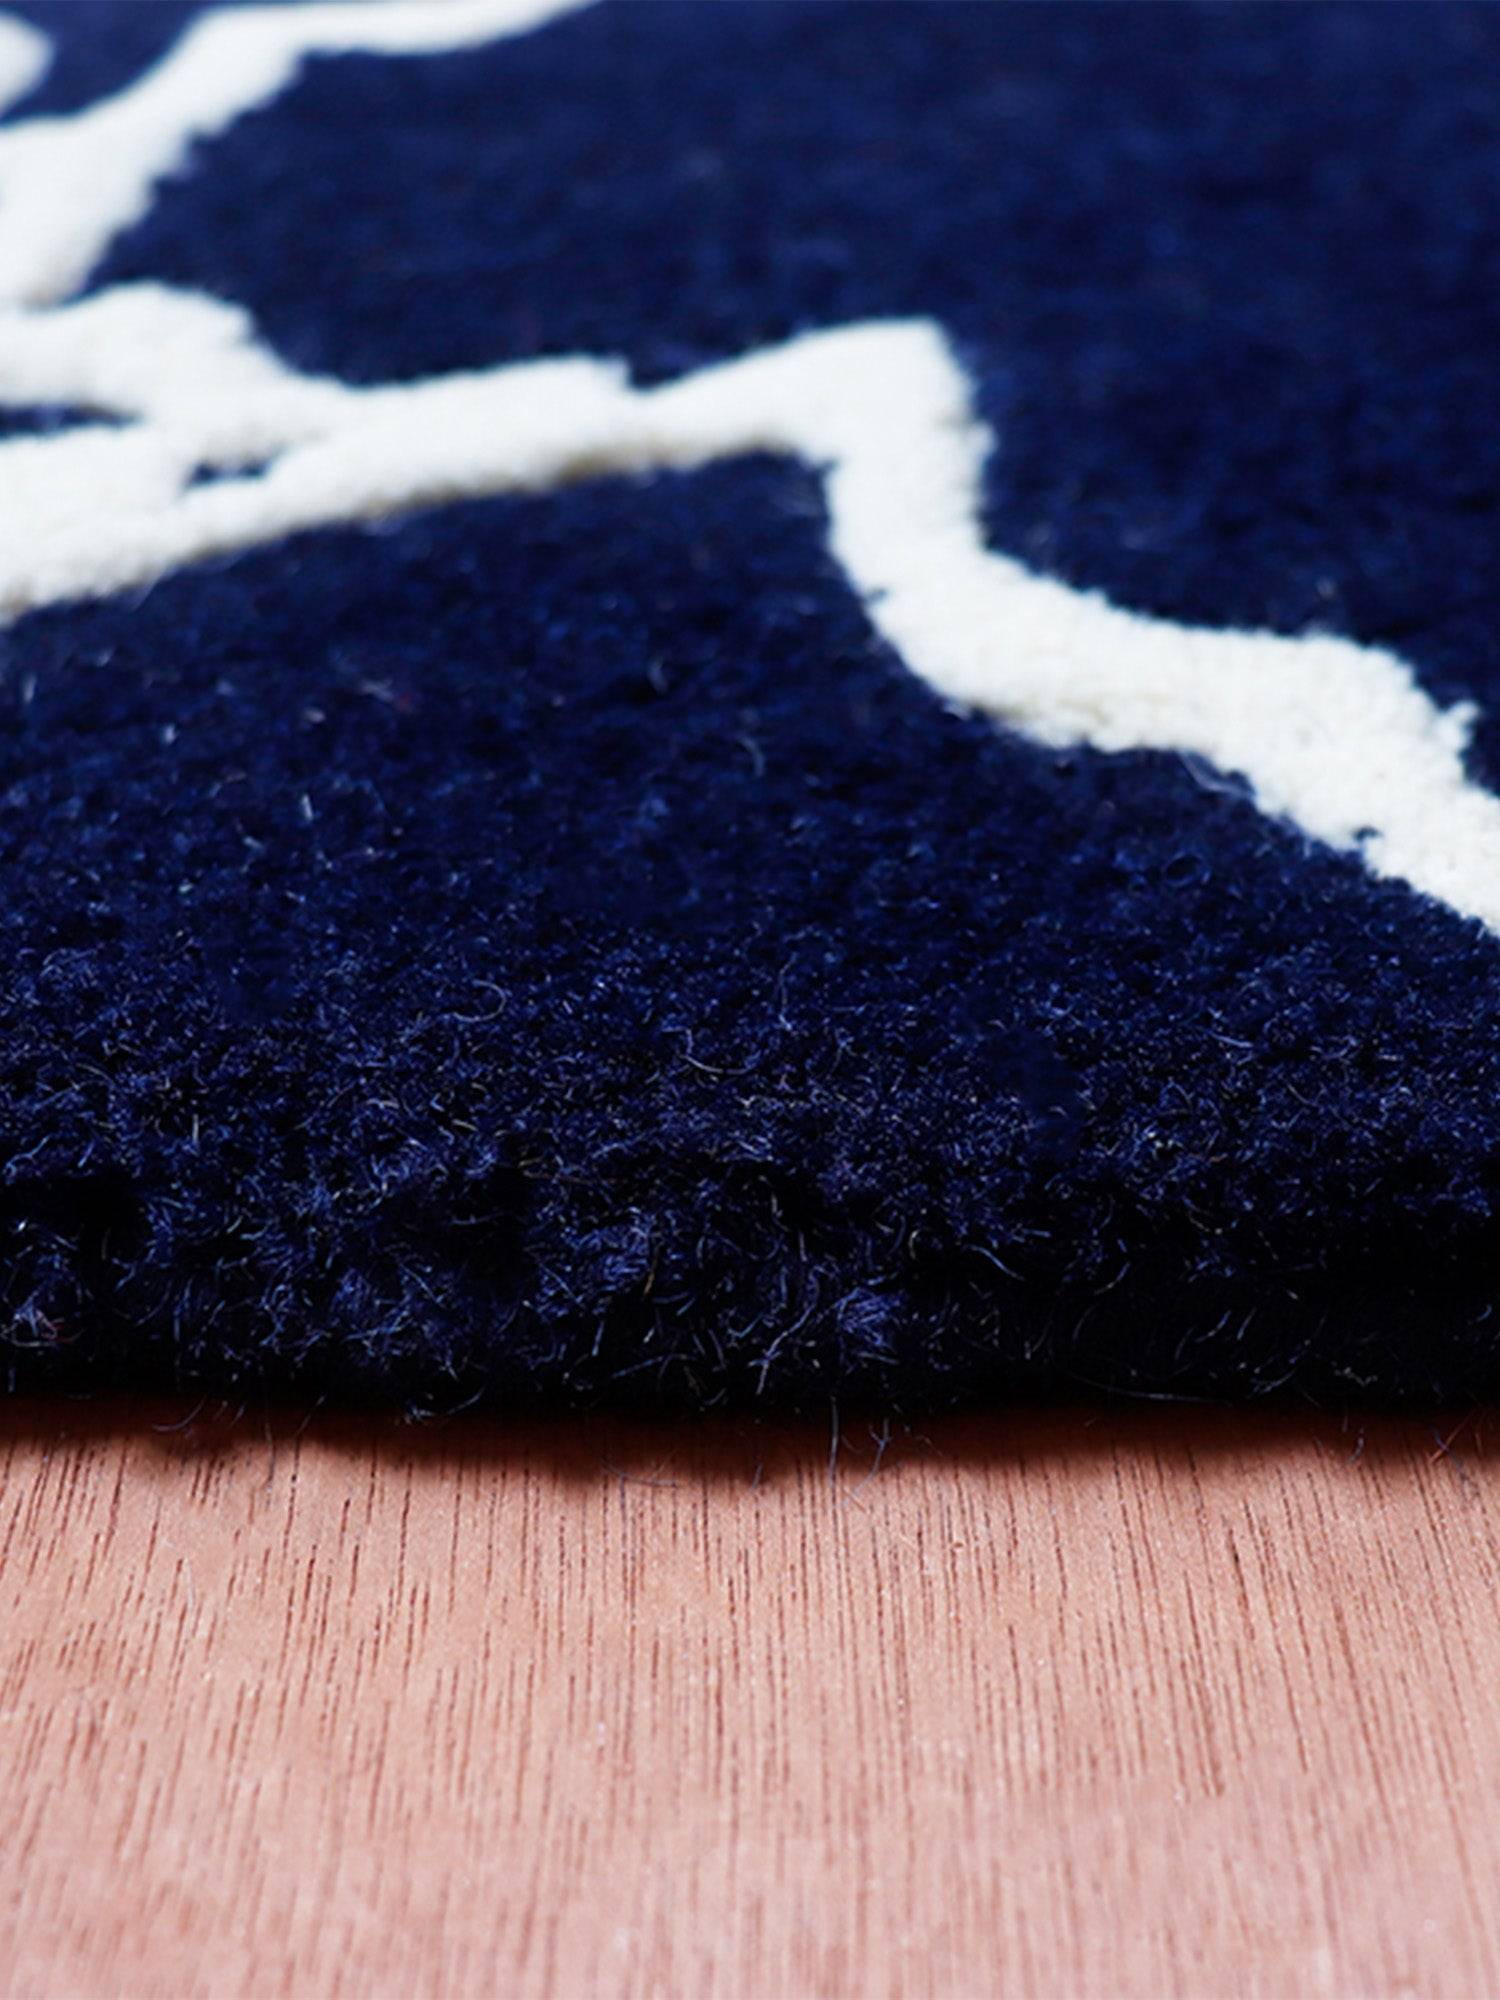 Carpet Hand Tufted 100% Woollen Blue Crane - 4ft X 6ft